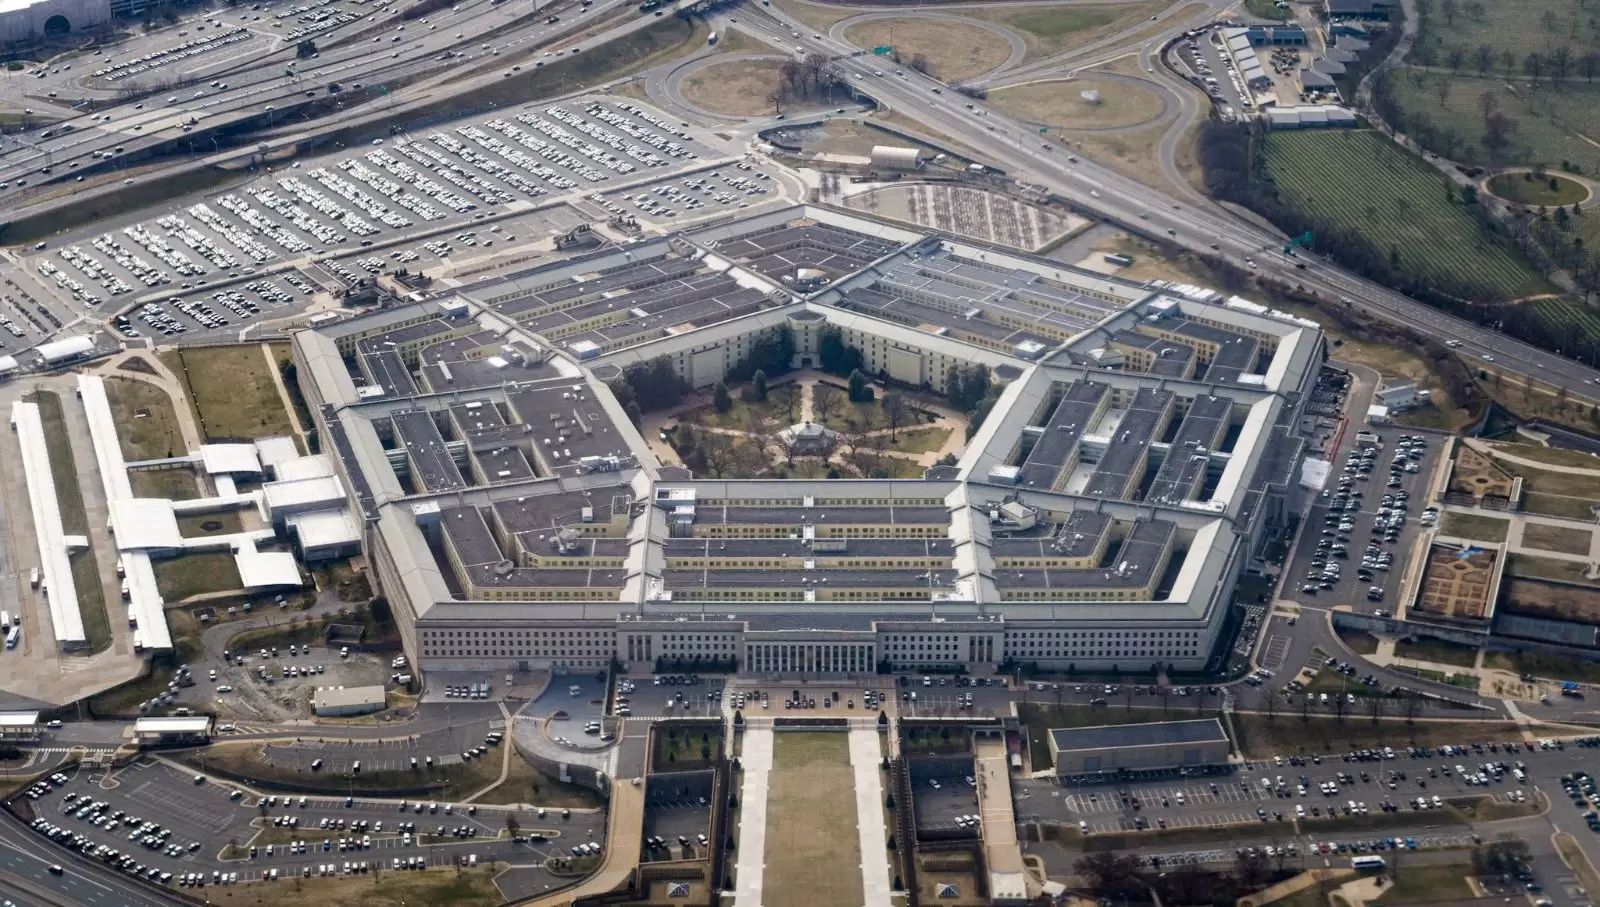 5 maddede sızdırılan Pentagon belgelerinin açığa çıkardığı gizli bilgiler: Pentagon belgelerini kim sızdırdı?